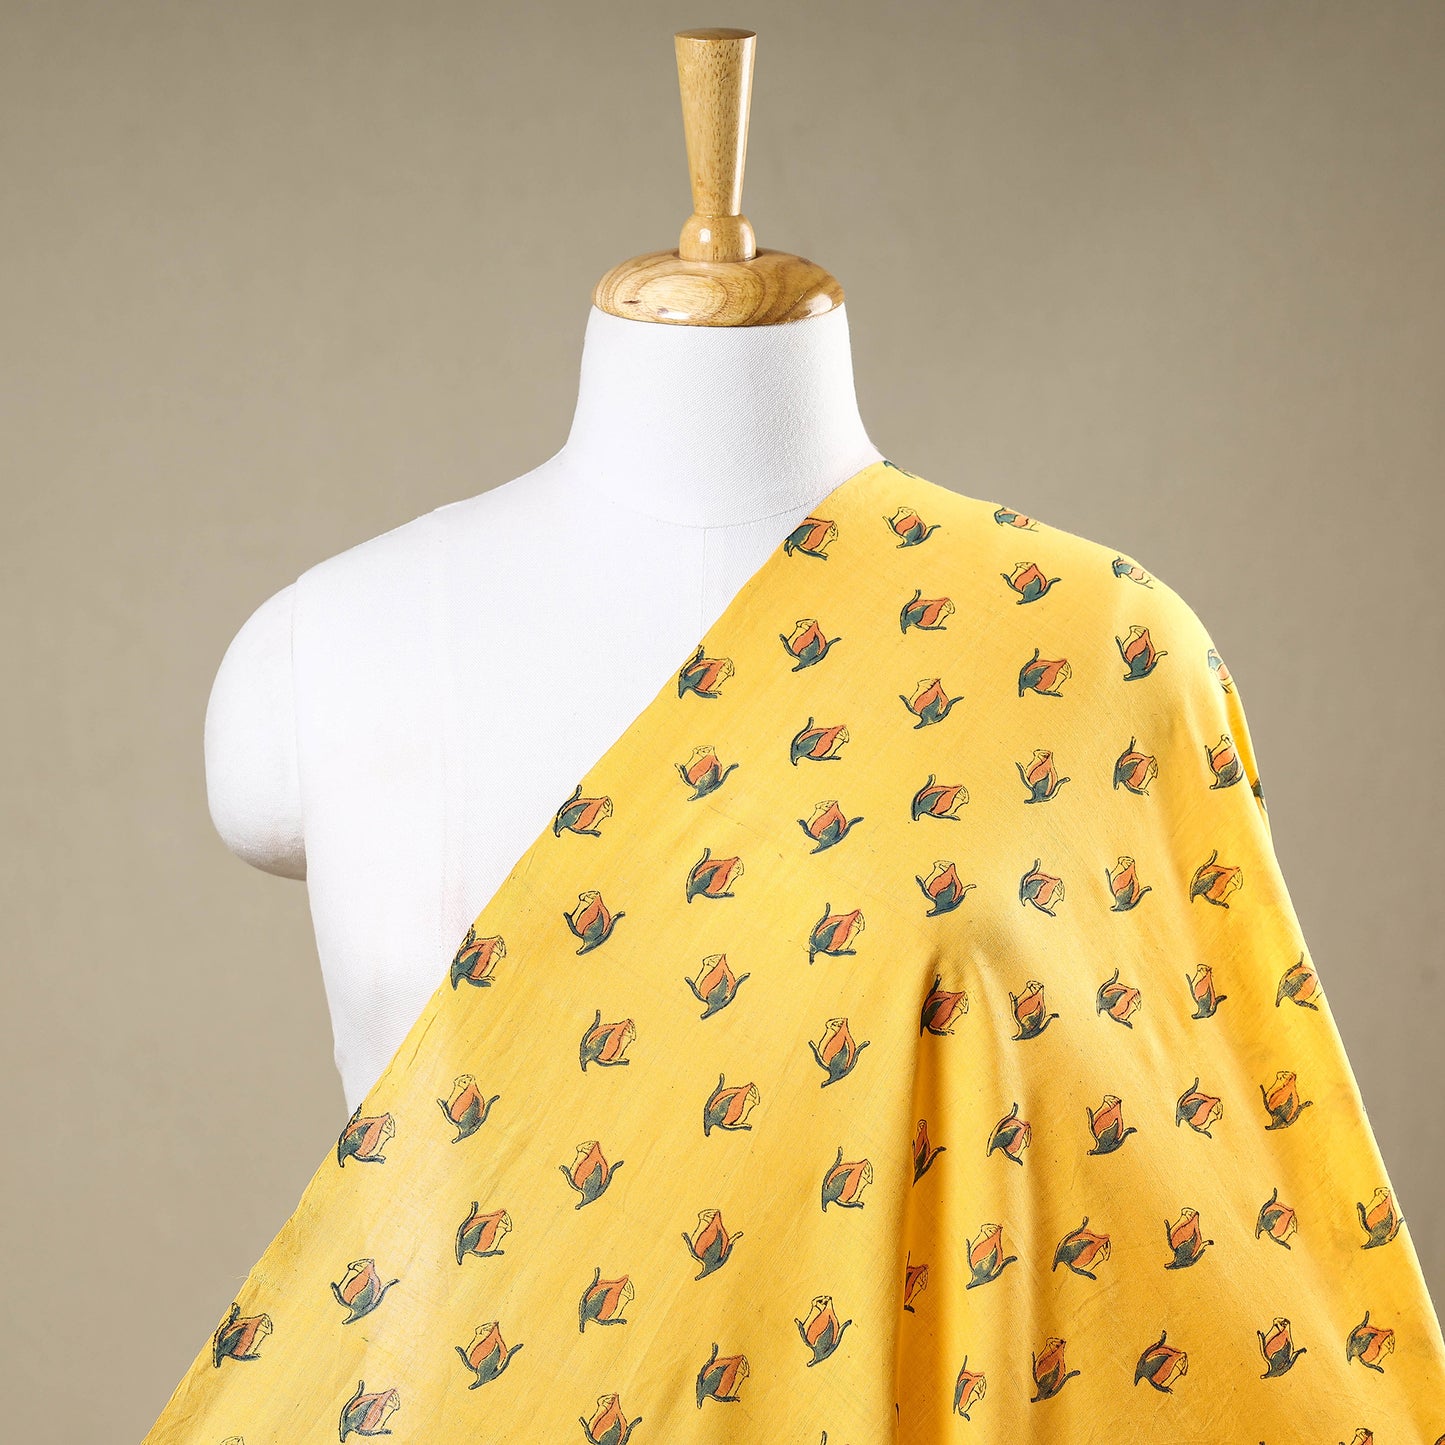 Yellow - Mangalgiri Block Printed Handwoven Cotton Fabric